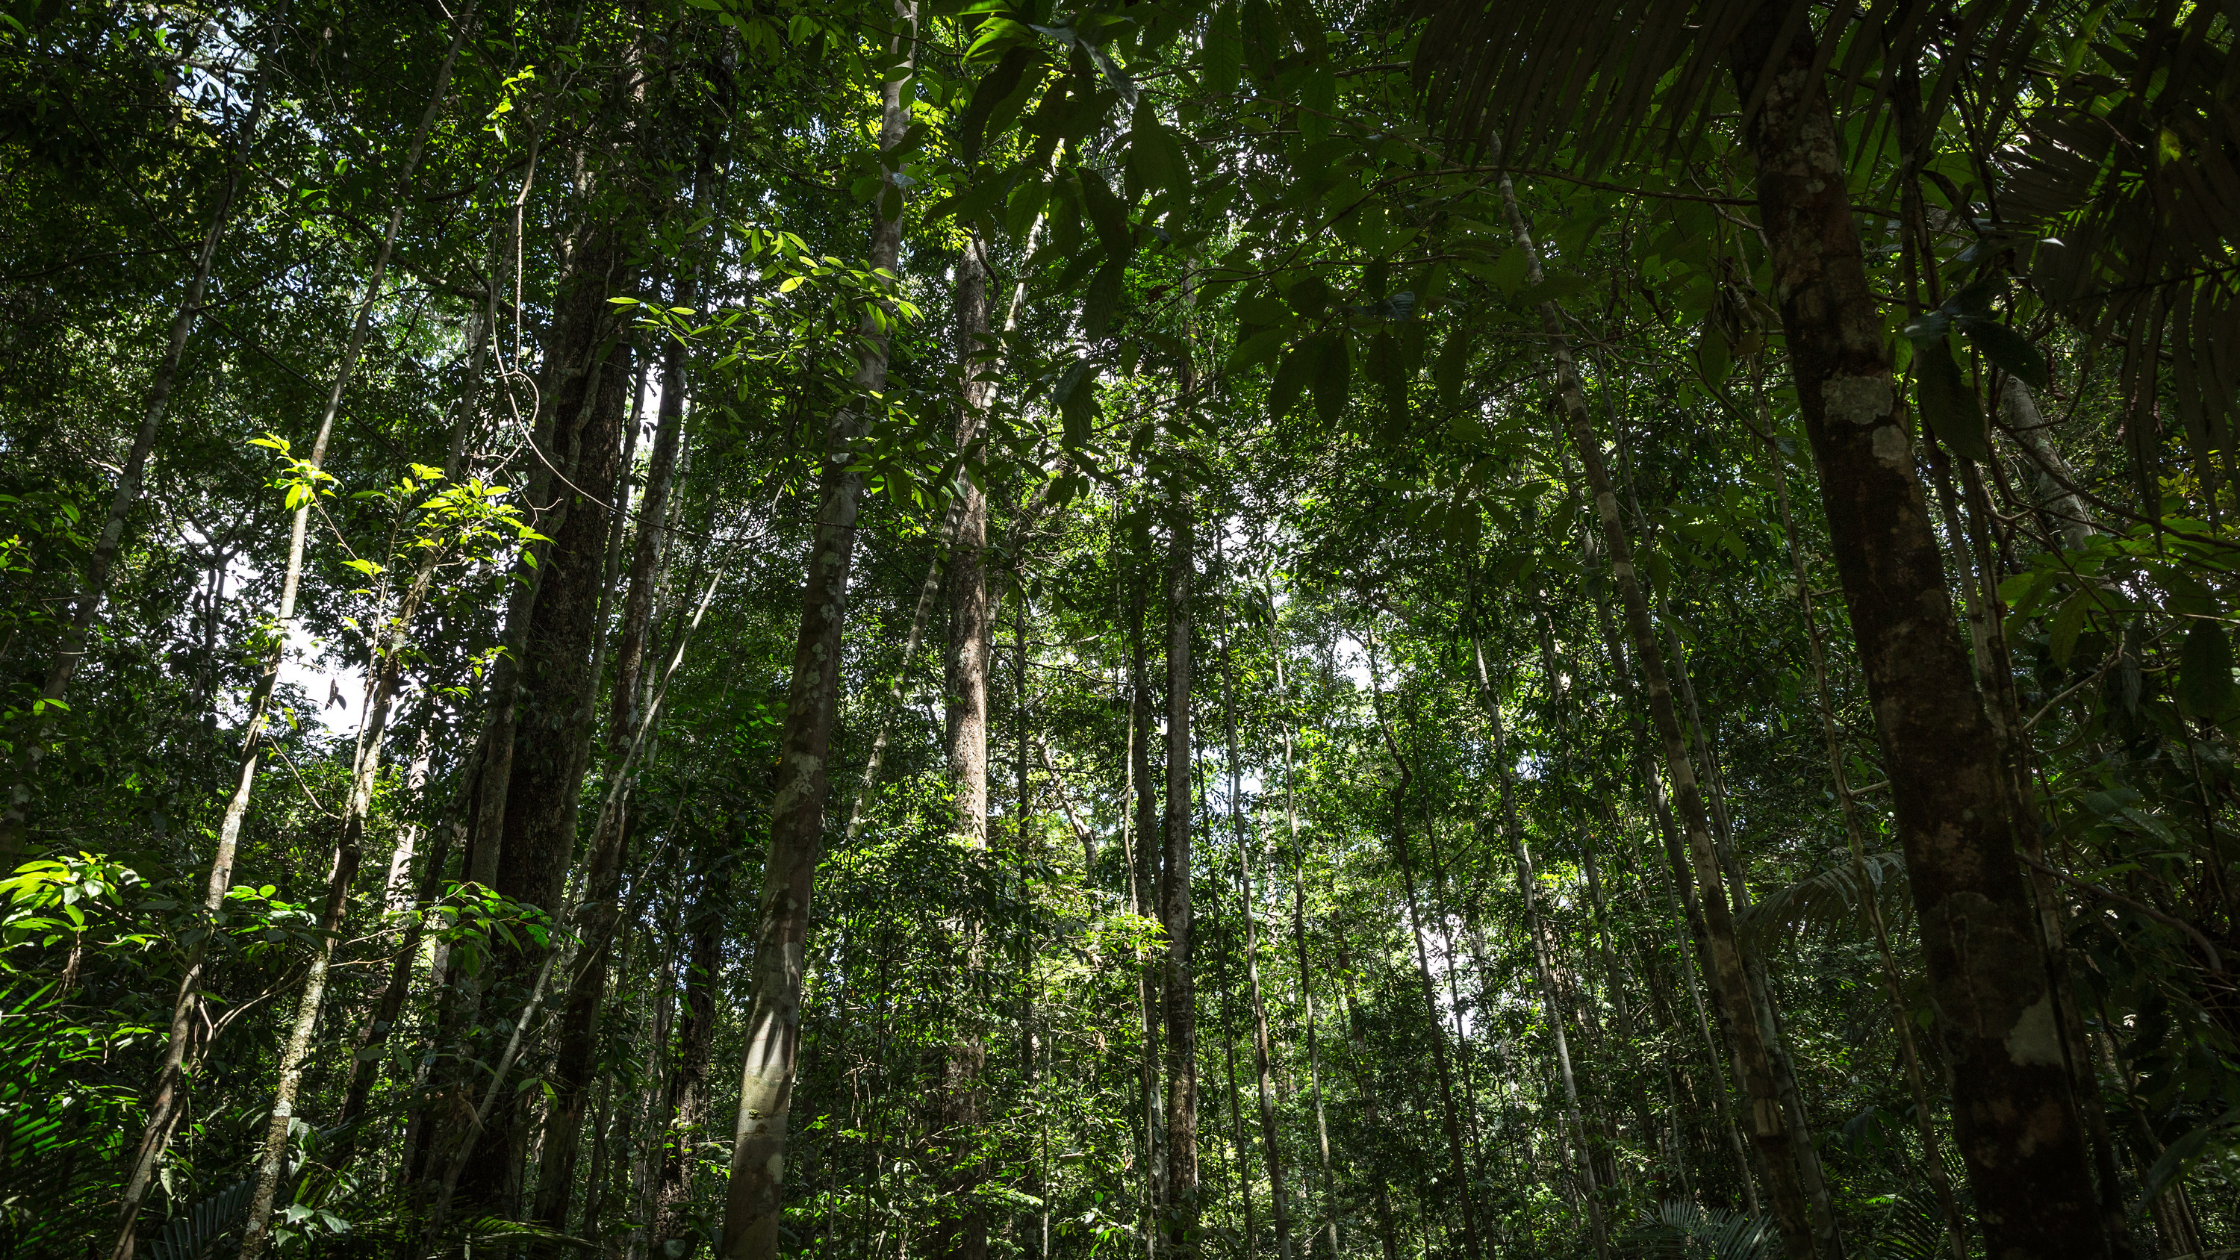 dense canopy of the rainforest in Brazil